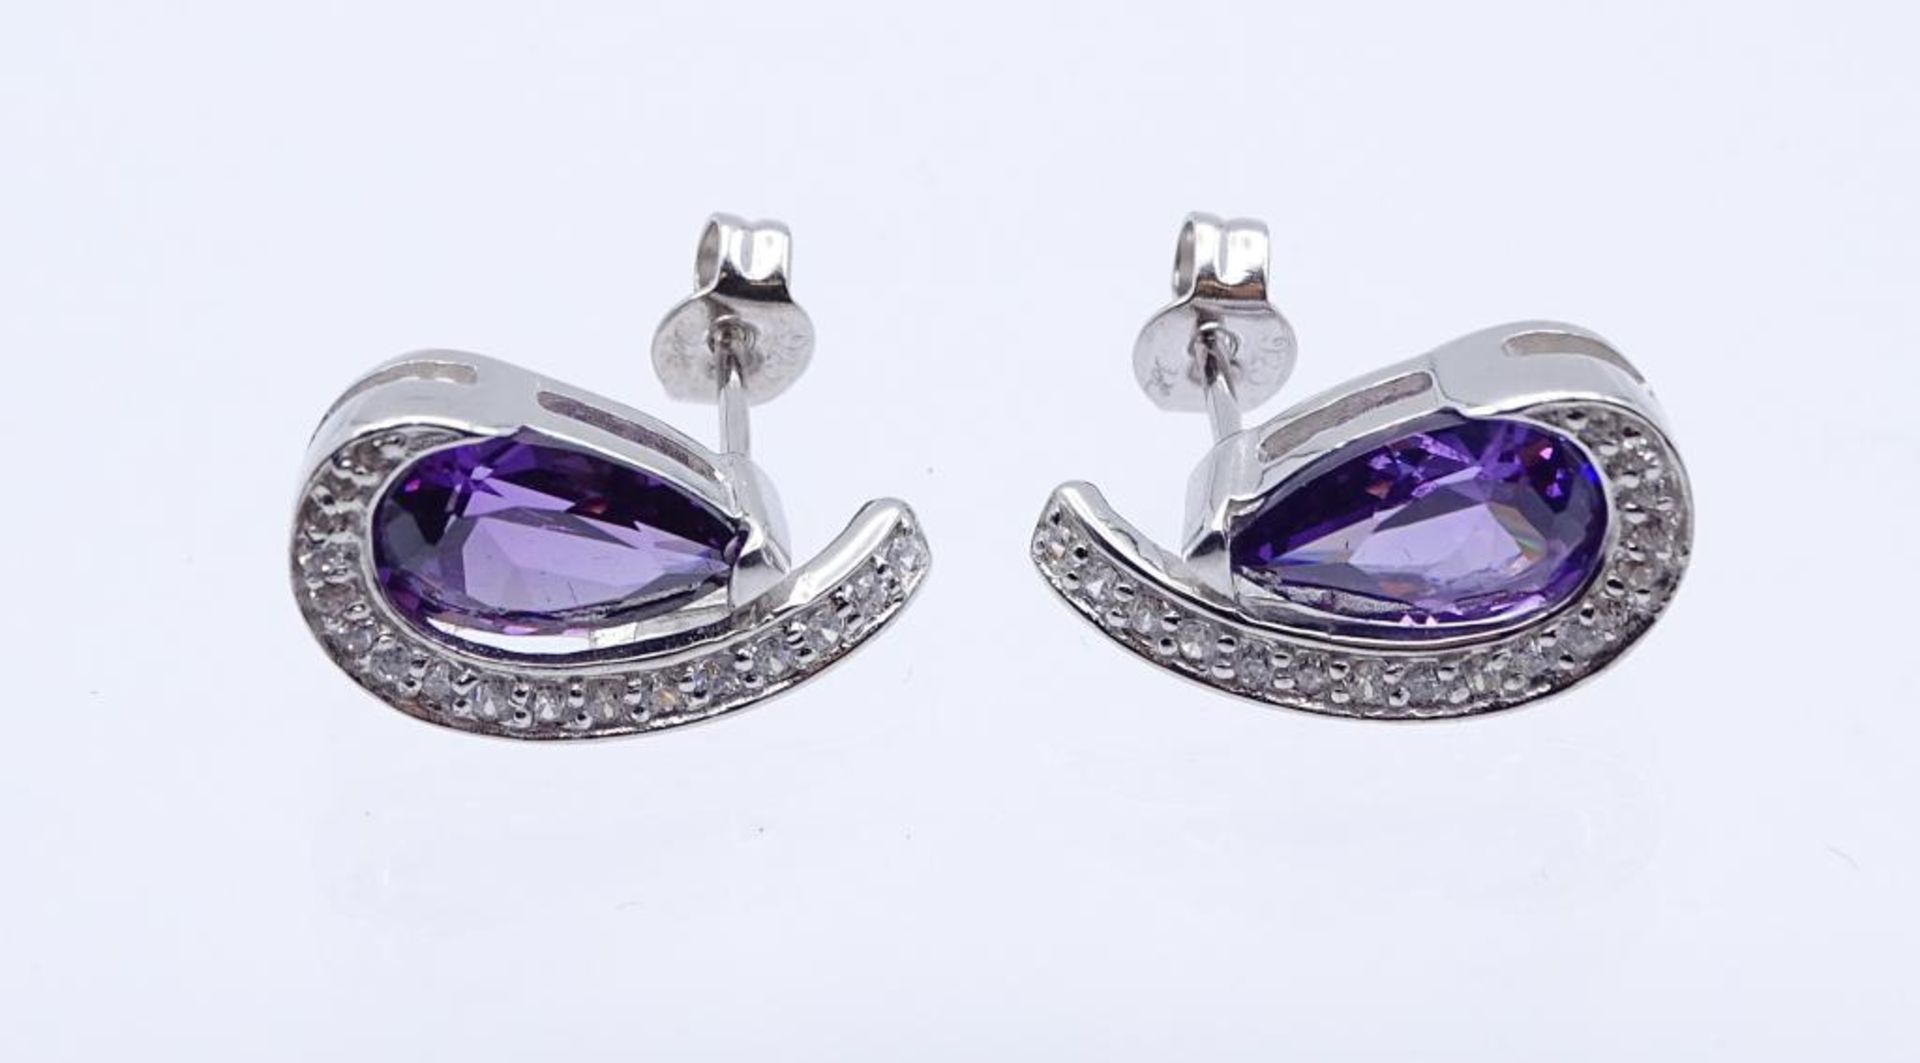 Edelstein-Ohrstecker Silber 925 mit 2 violetten, tropfenförmig fac. Edelsteinen 11 mm, sowie